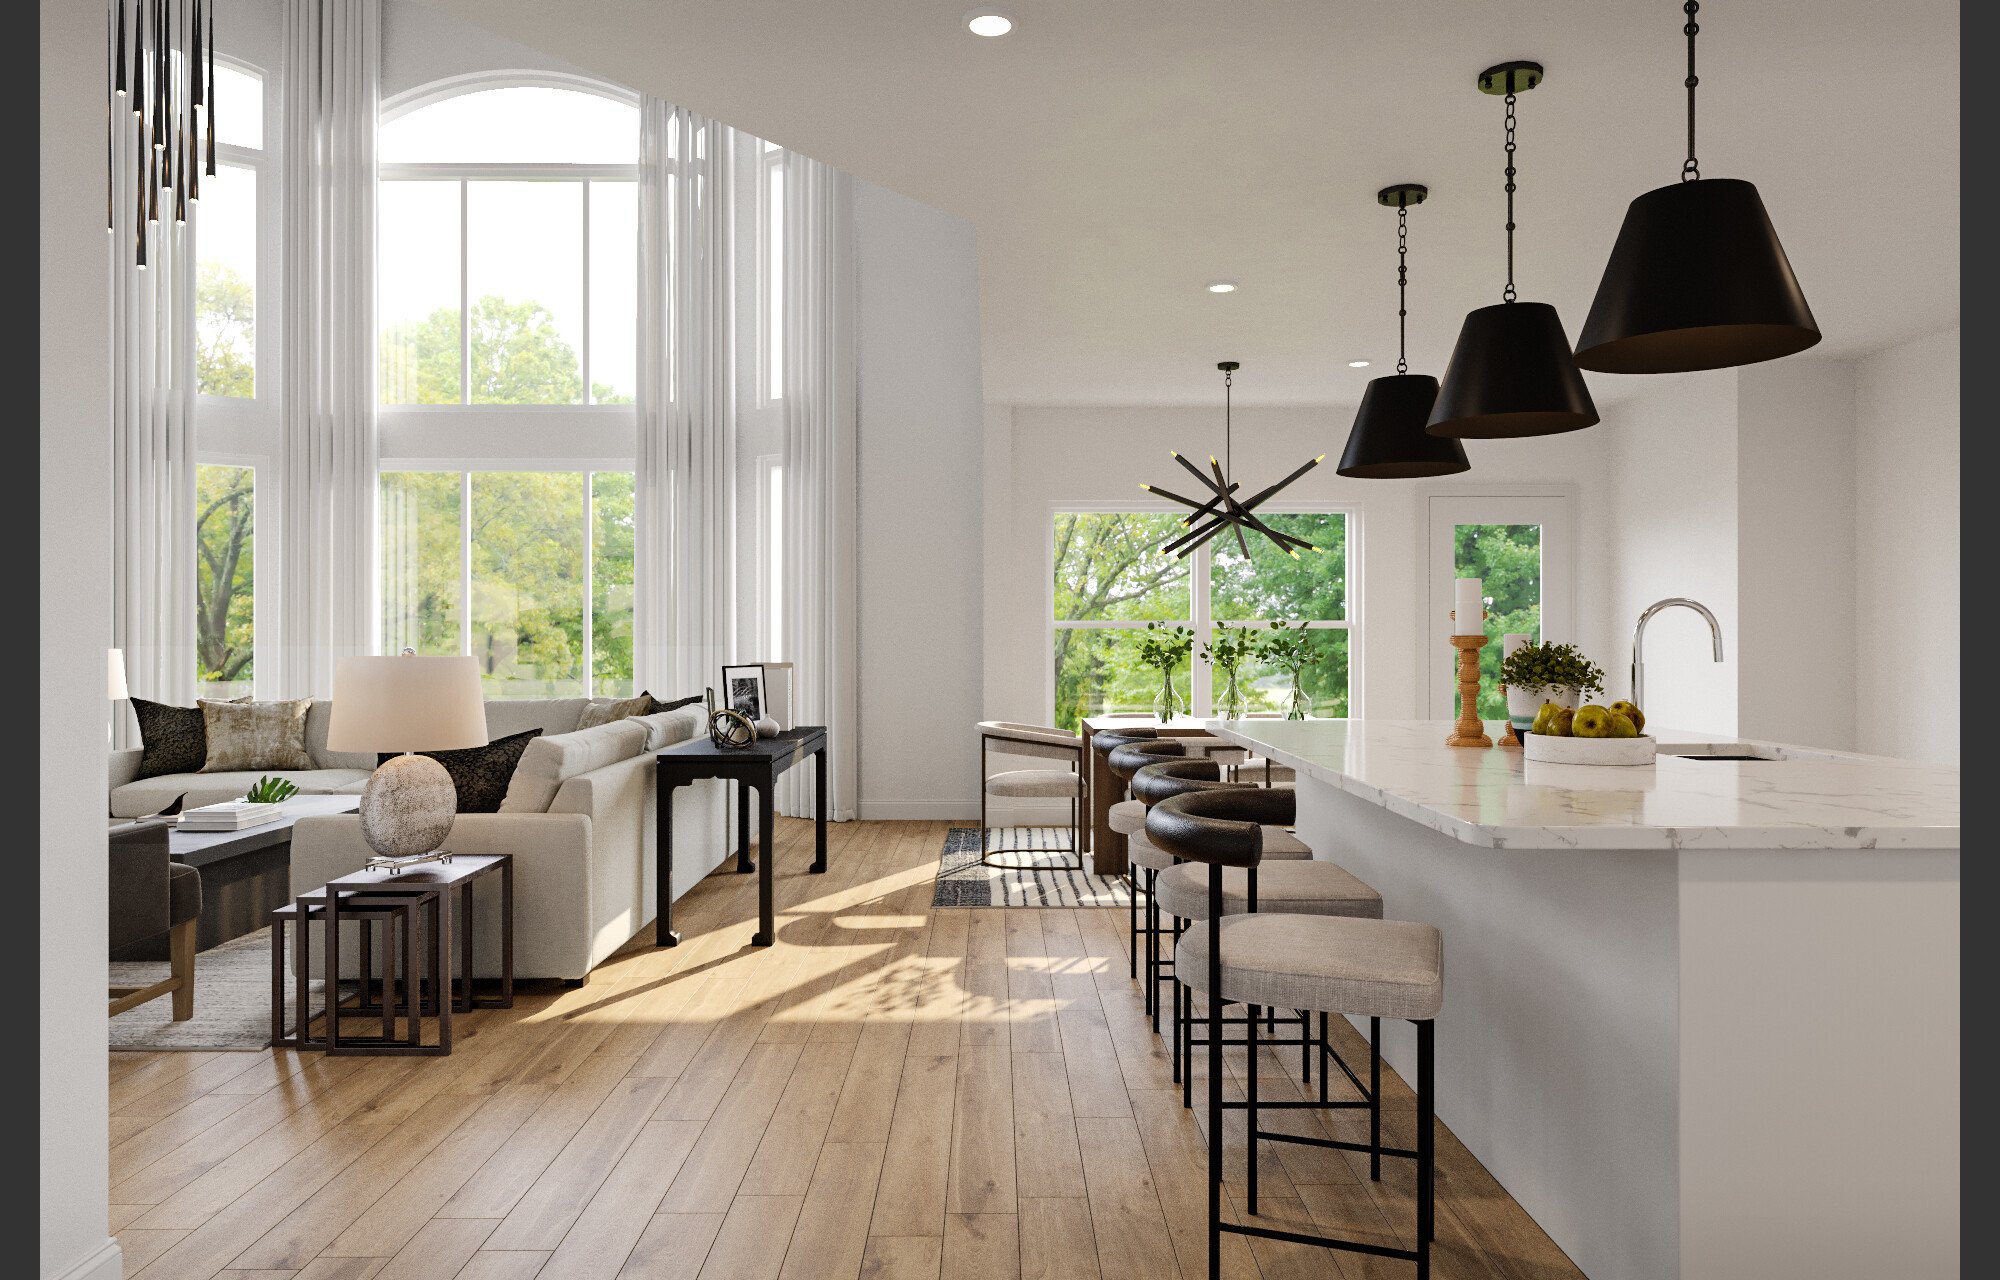 Affordable Online Living Dining Room Design interior design 3